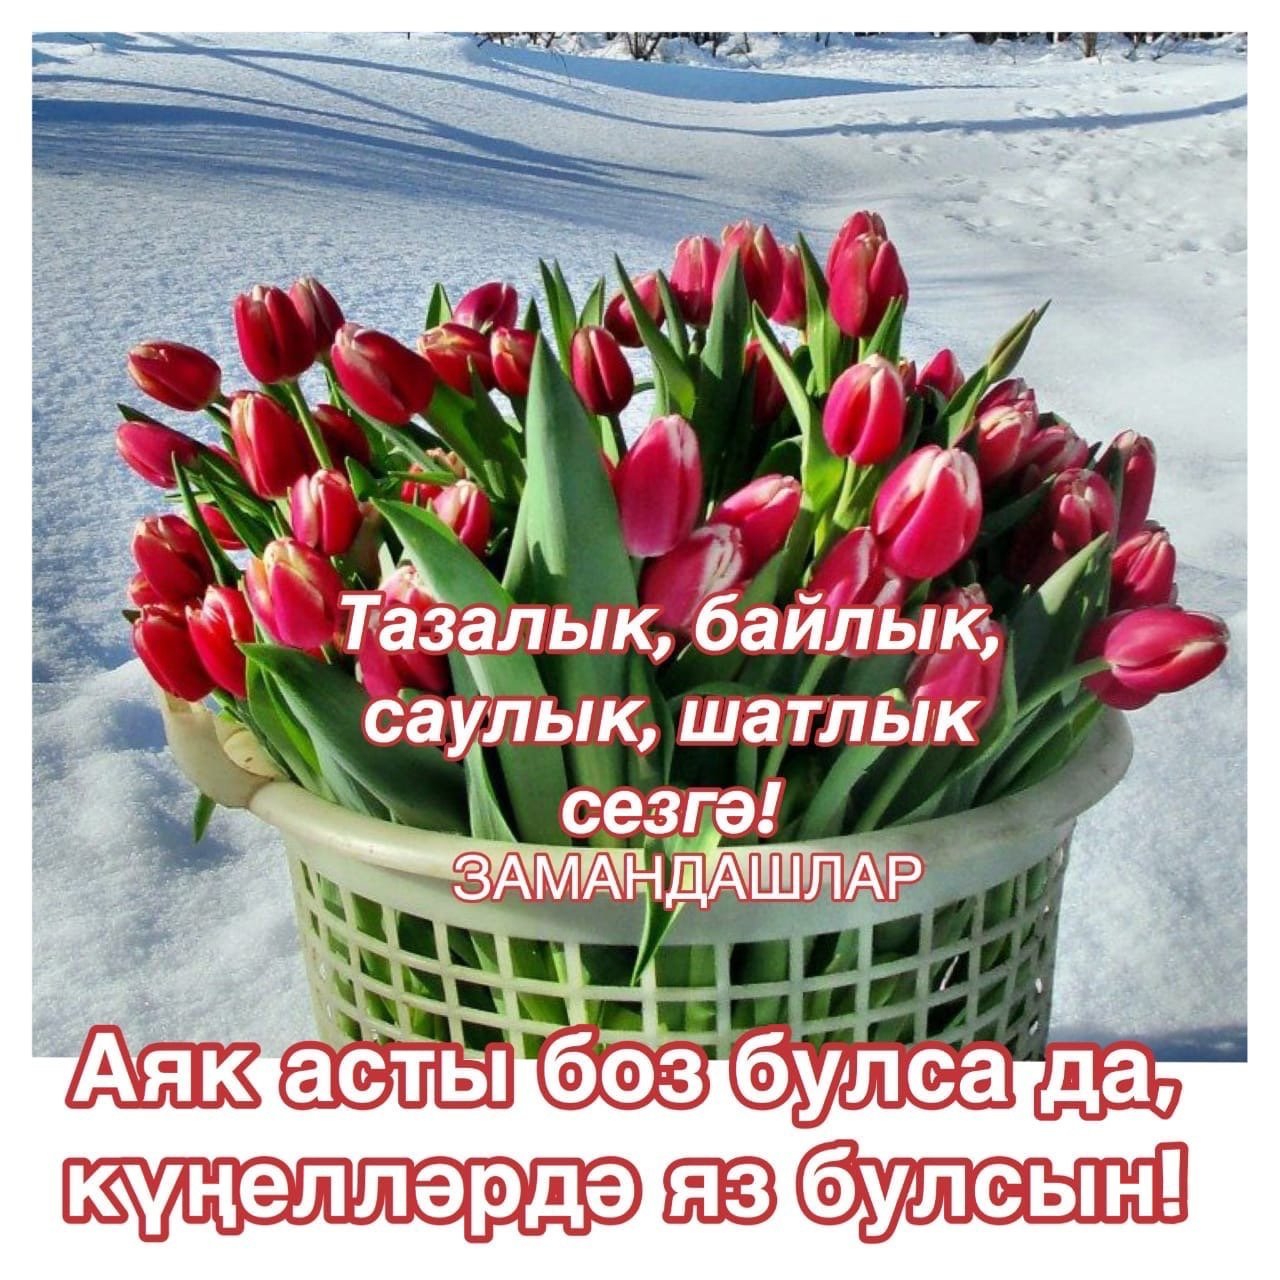 Прекрасные картинки, чтобы отправить матери на татарском языке